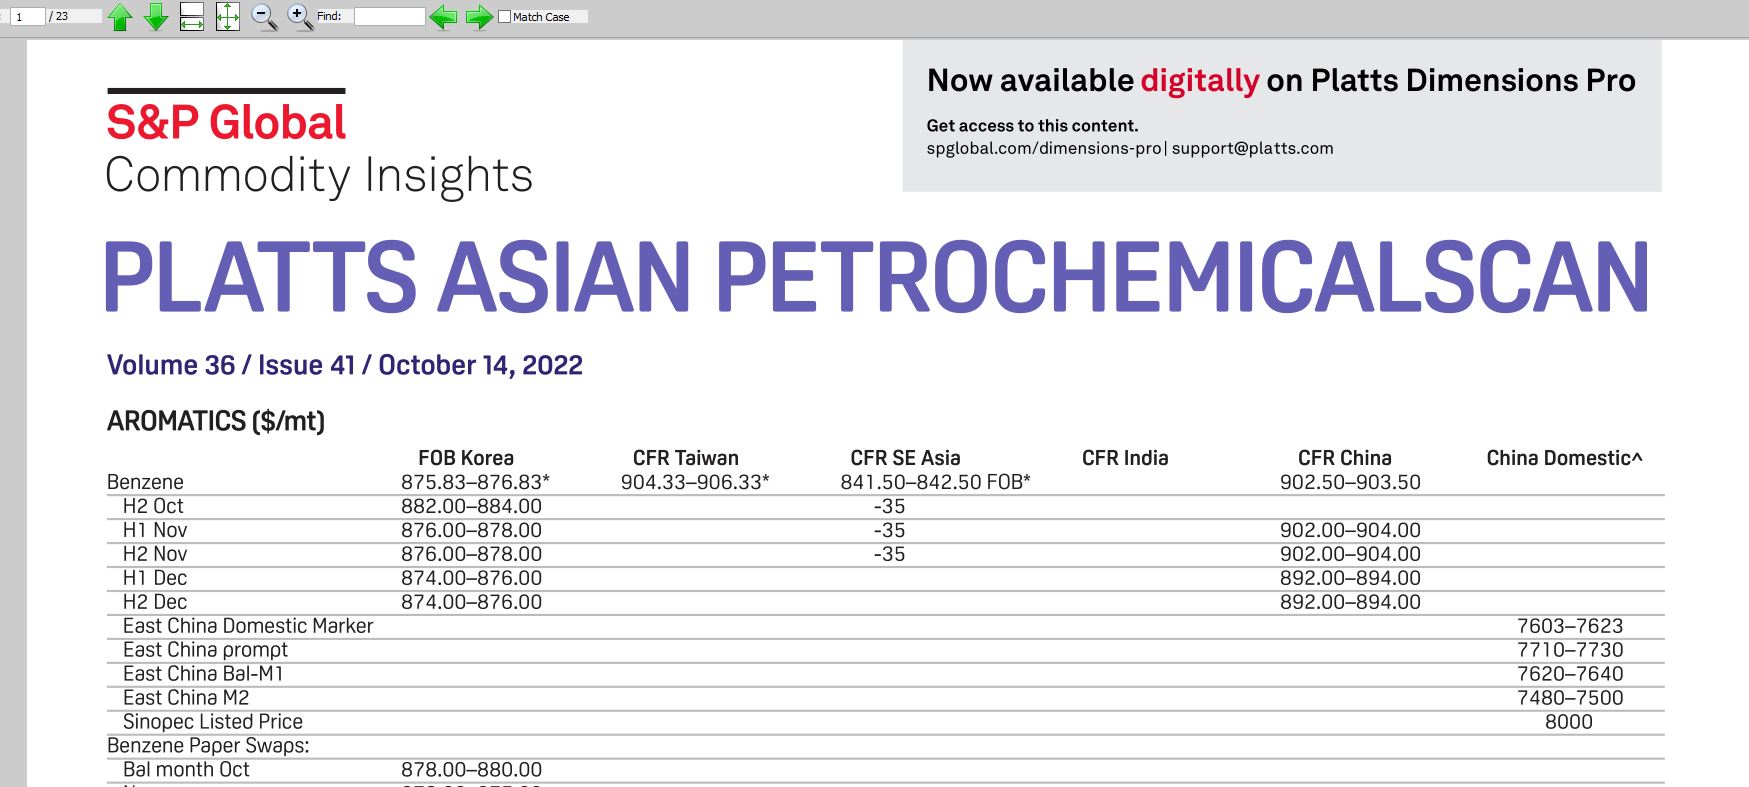 دانلود Platts Asian Petrochemicalscan دریافت قیمت محصولات شیمیایی پتروشیمی از نشریه پلتس آخرین قیمت‌های جهانی پلیمرها، آروماتیک ها، الفین ها و بازارهای پتروشیمی